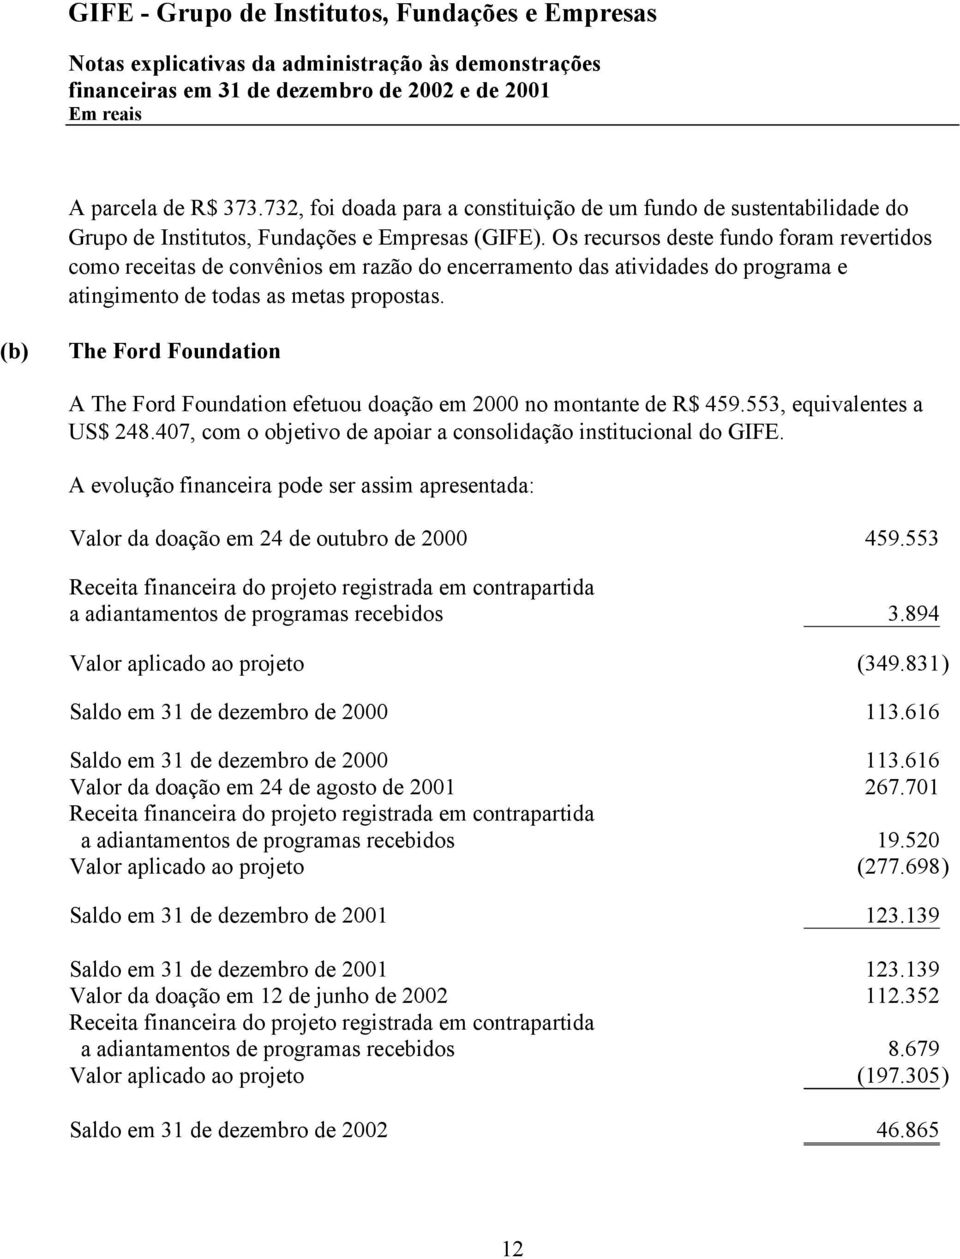 (b) The Ford Foundation A The Ford Foundation efetuou doação em 2000 no montante de R$ 459.553, equivalentes a US$ 248.407, com o objetivo de apoiar a consolidação institucional do GIFE.